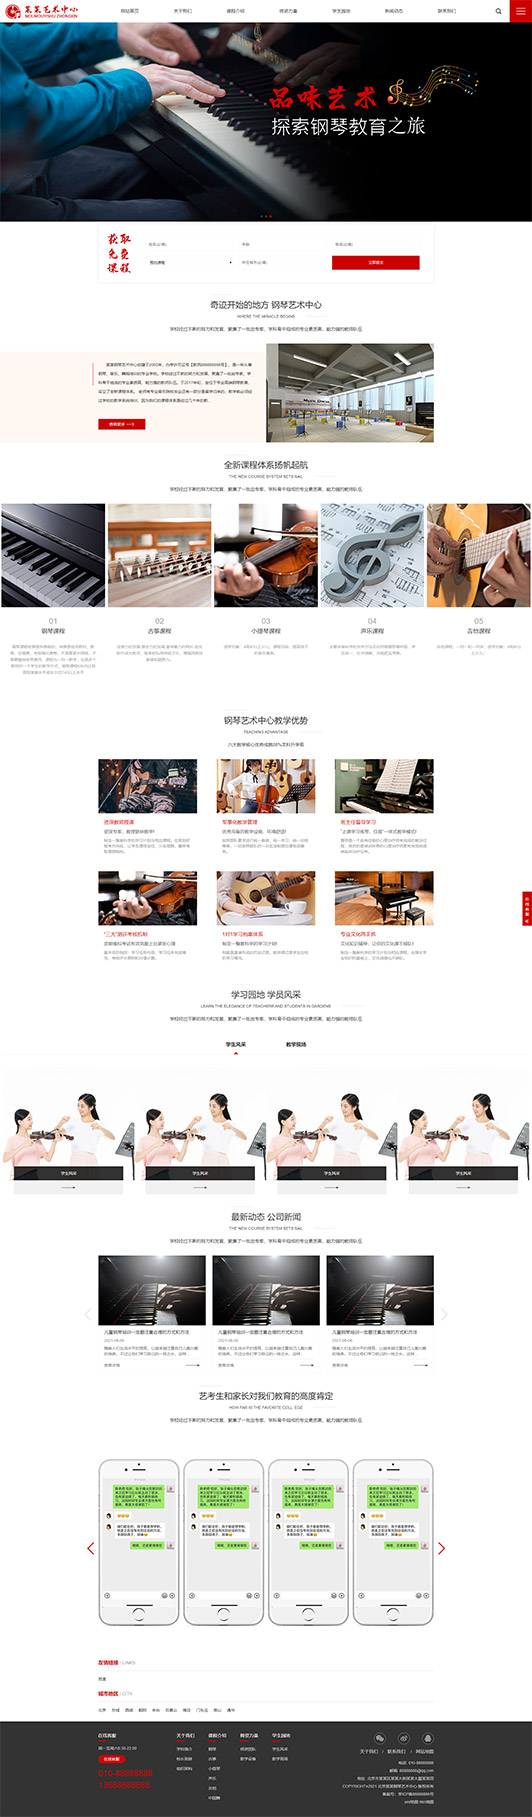 乌海钢琴艺术培训公司响应式企业网站